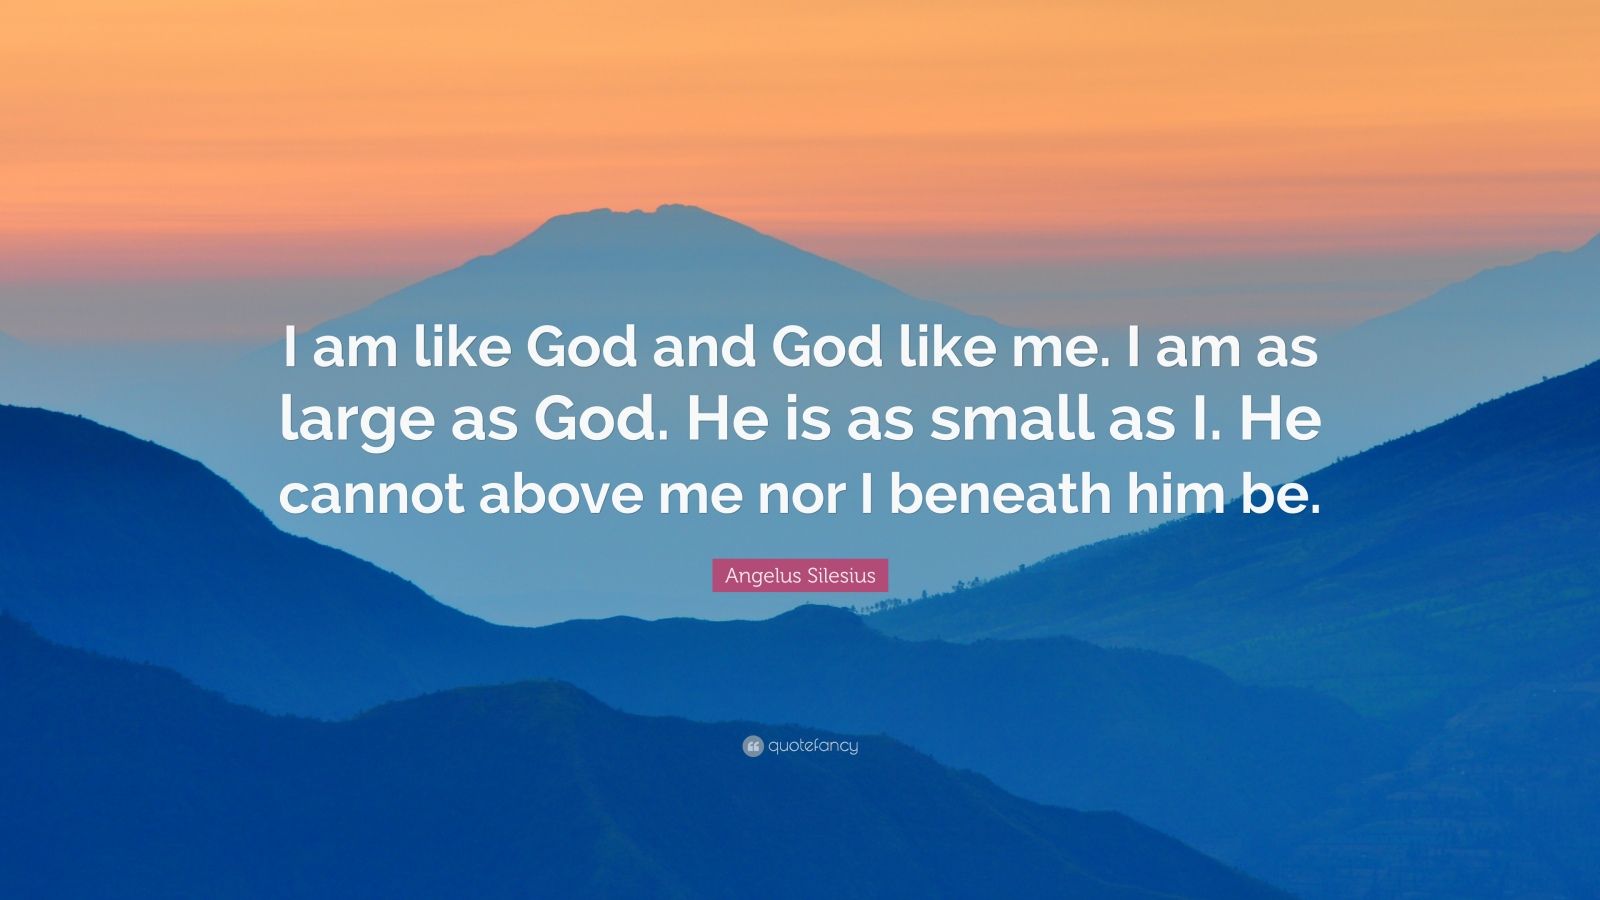 Angelus Silesius Quote: “I am like God and God like me. I am as large